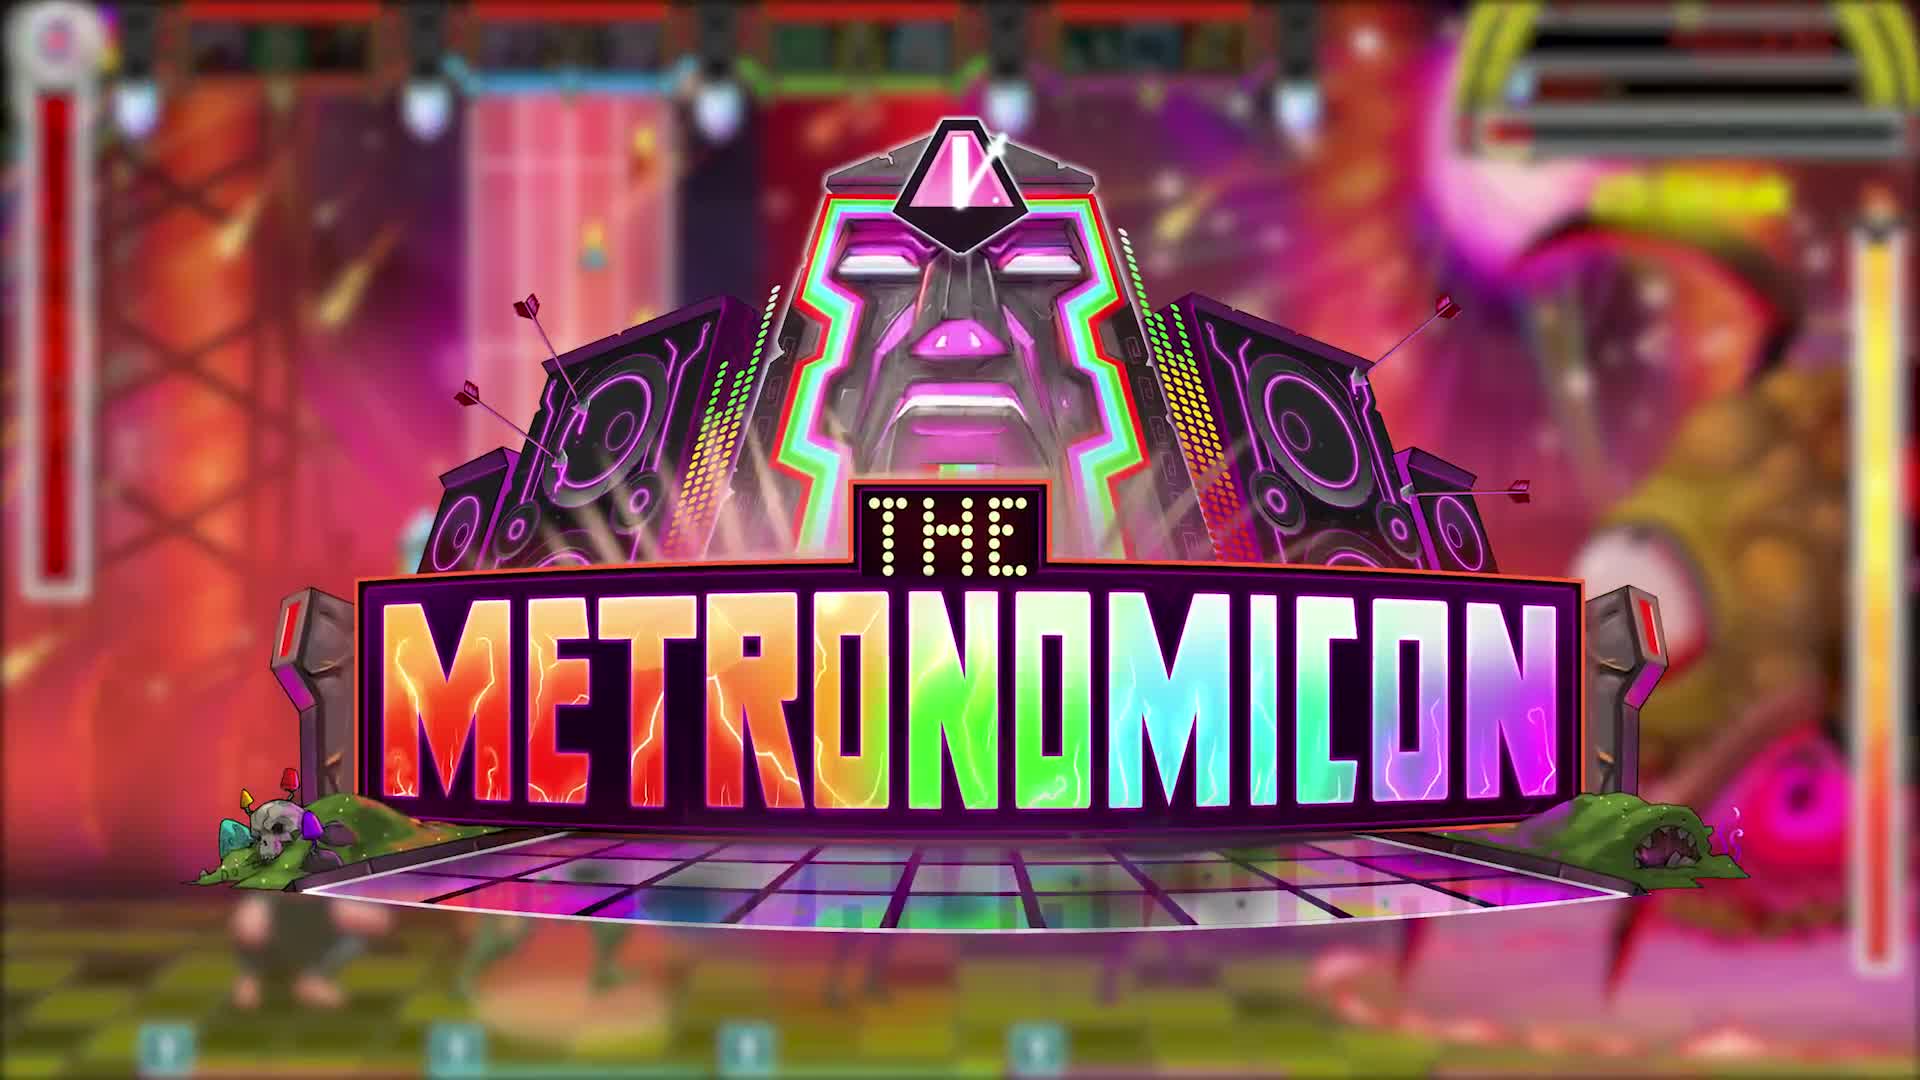 The Metronomicon - Teaser Trailer